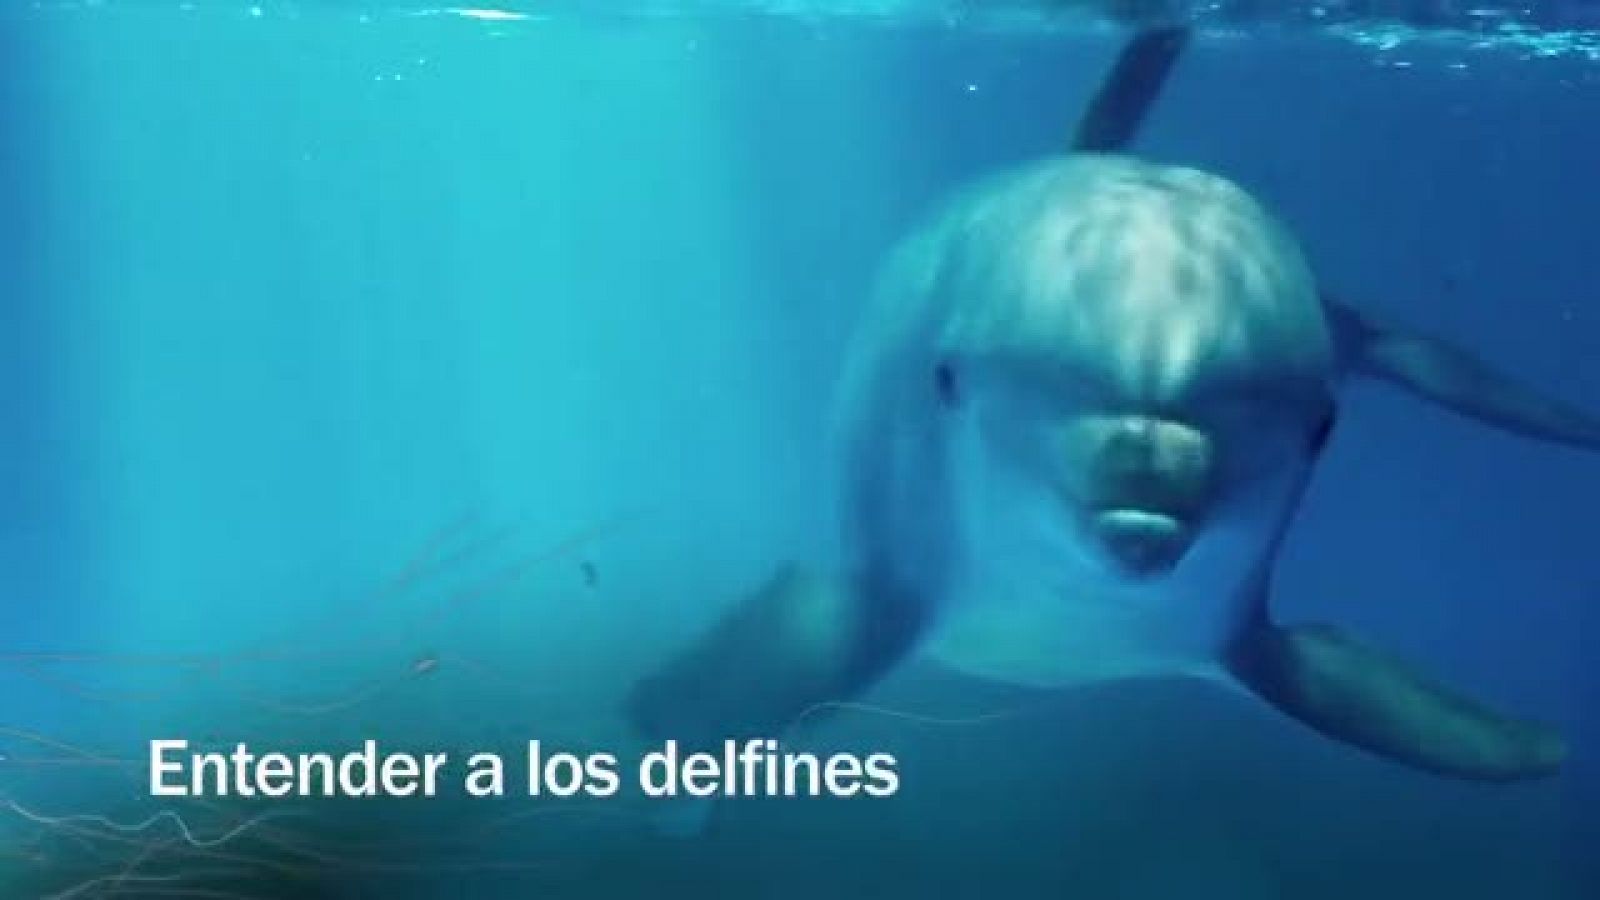 Redes - Entender a los delfines - avance